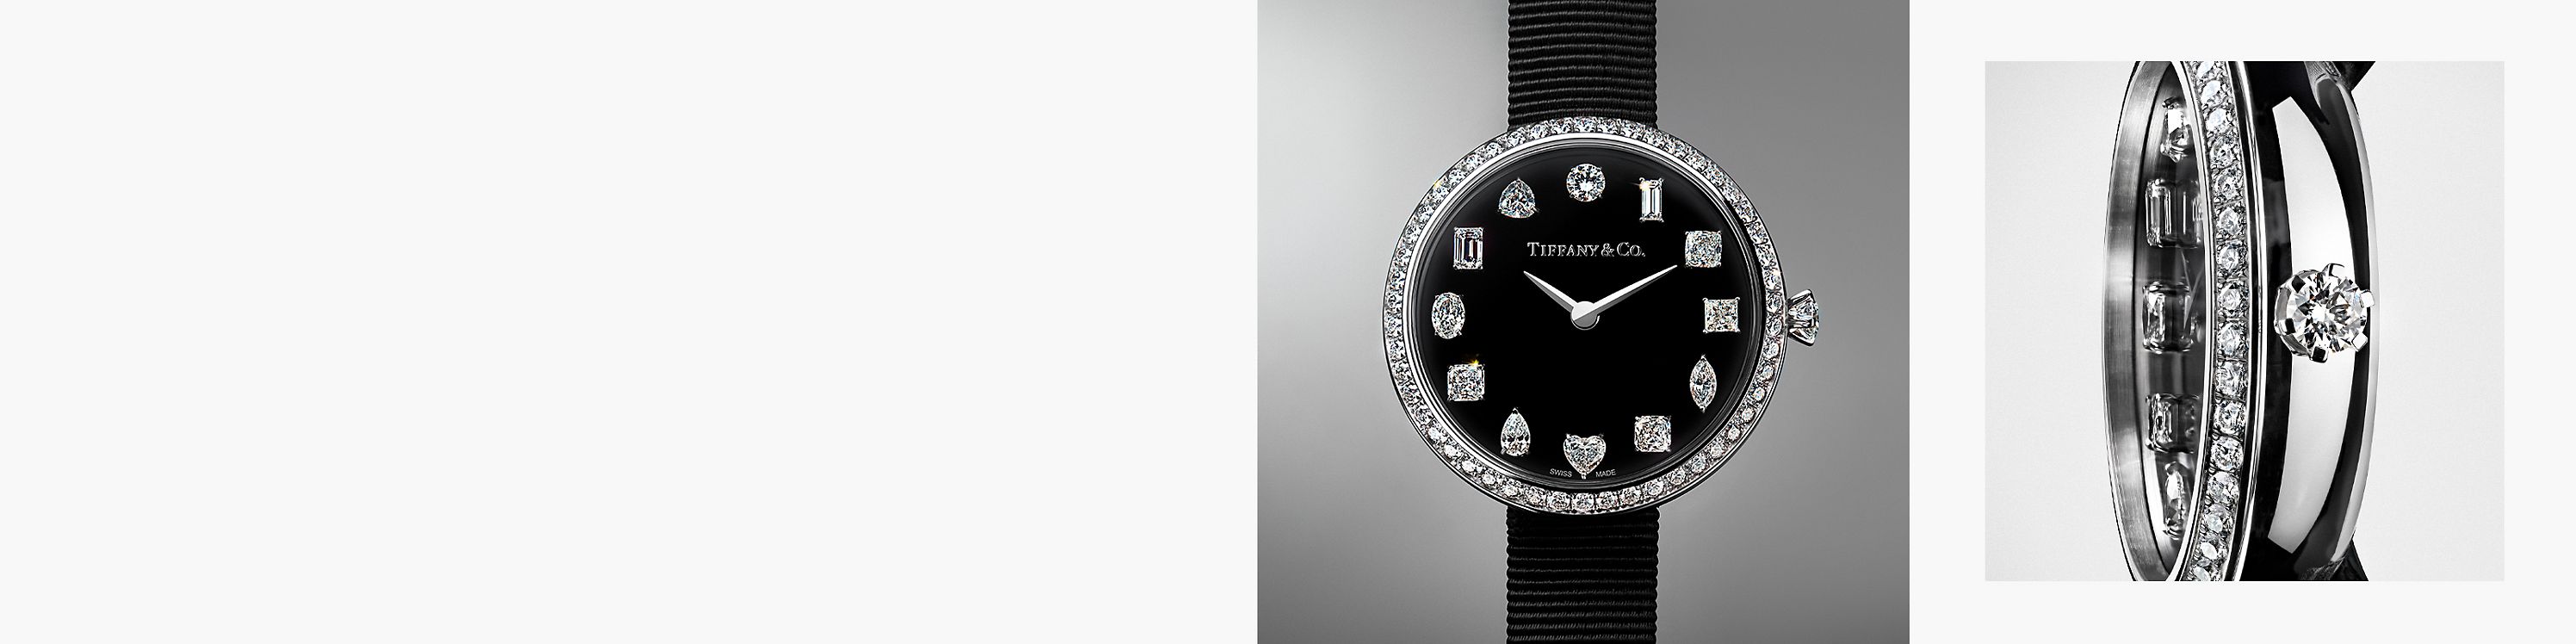 Orologi da donna Tiffany & Co. 